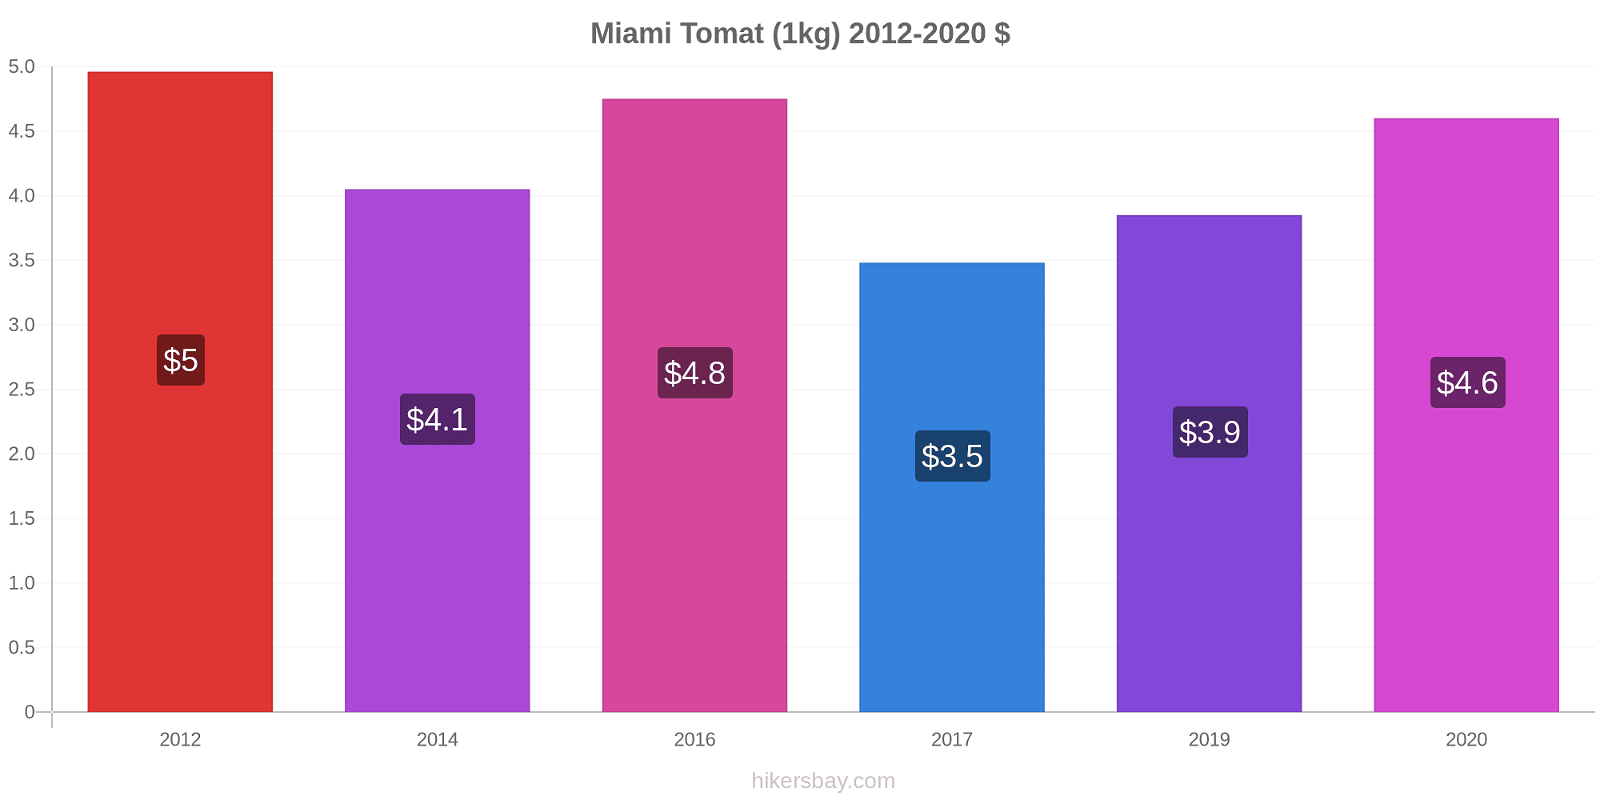 Miami prisförändringar Tomat (1kg) hikersbay.com